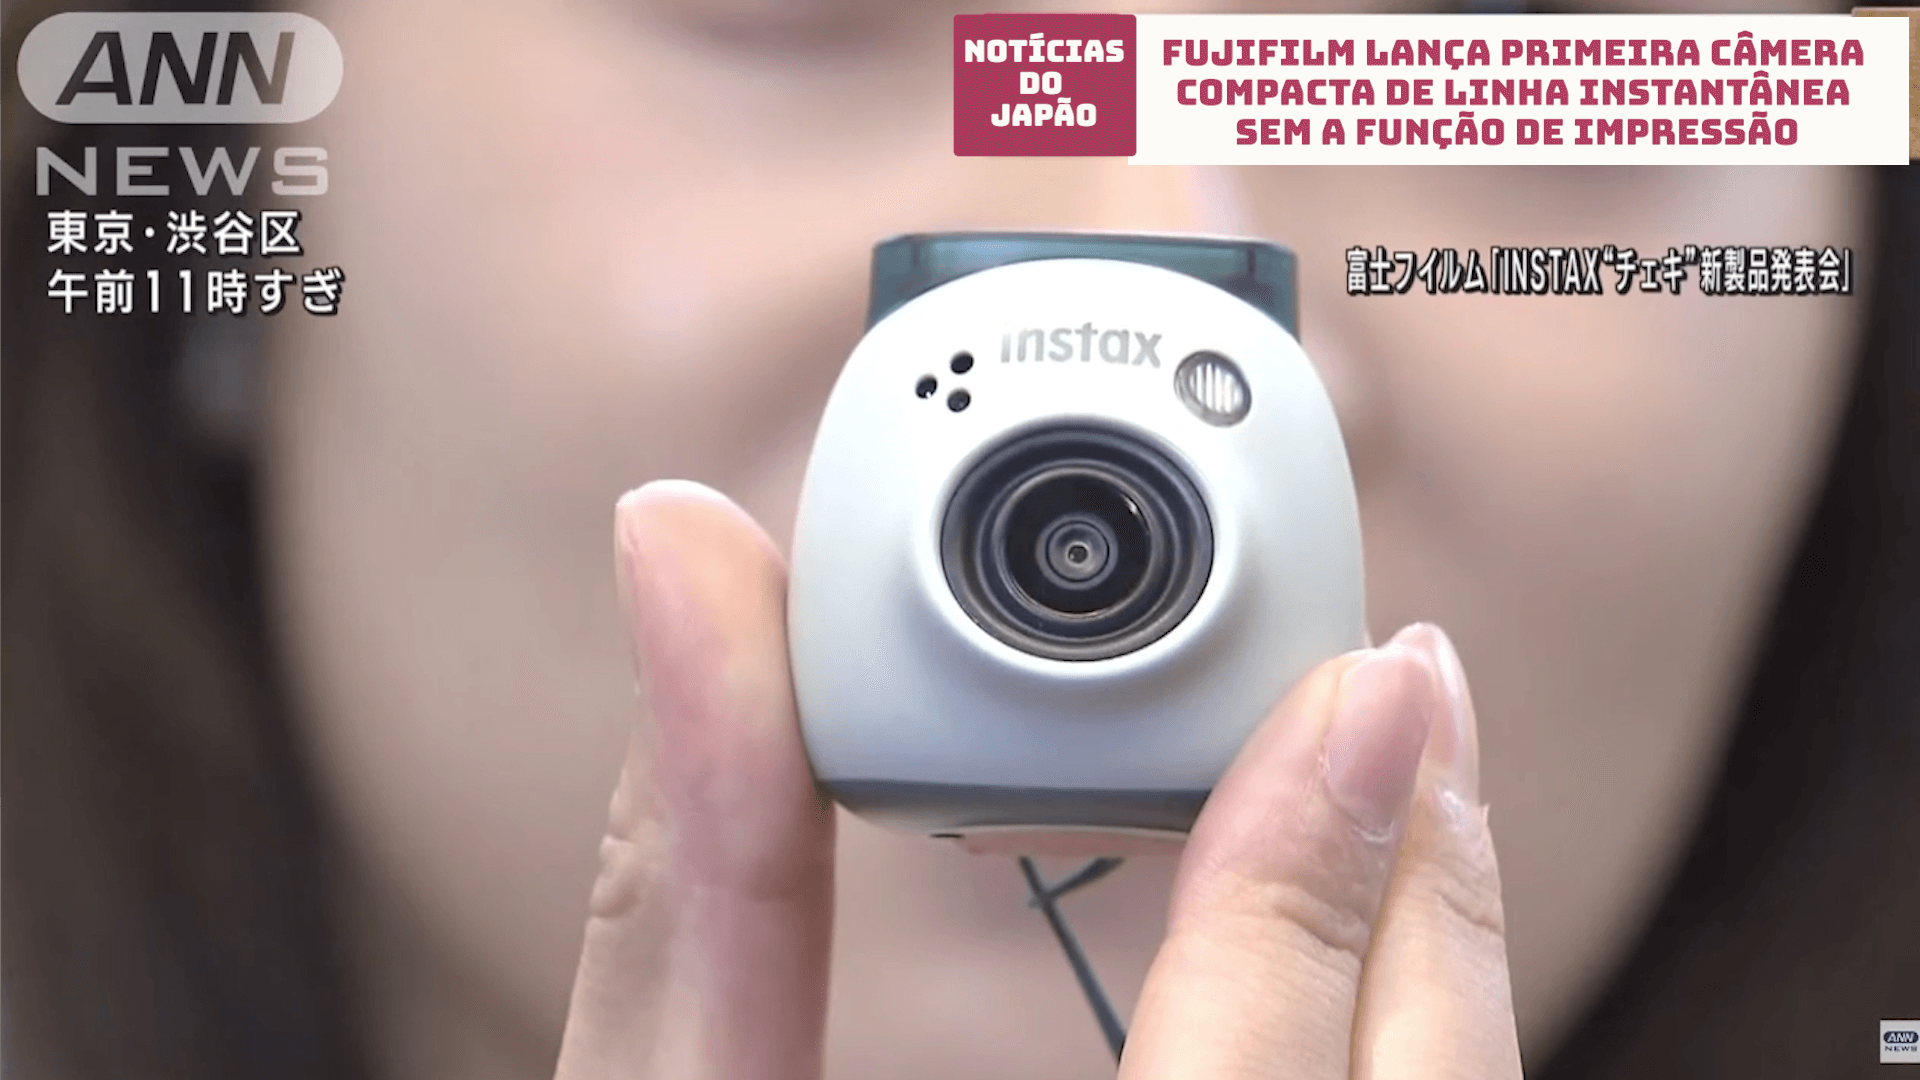 FujiFilm lança primeira câmera compacta de linha instantânea sem a função de impressão